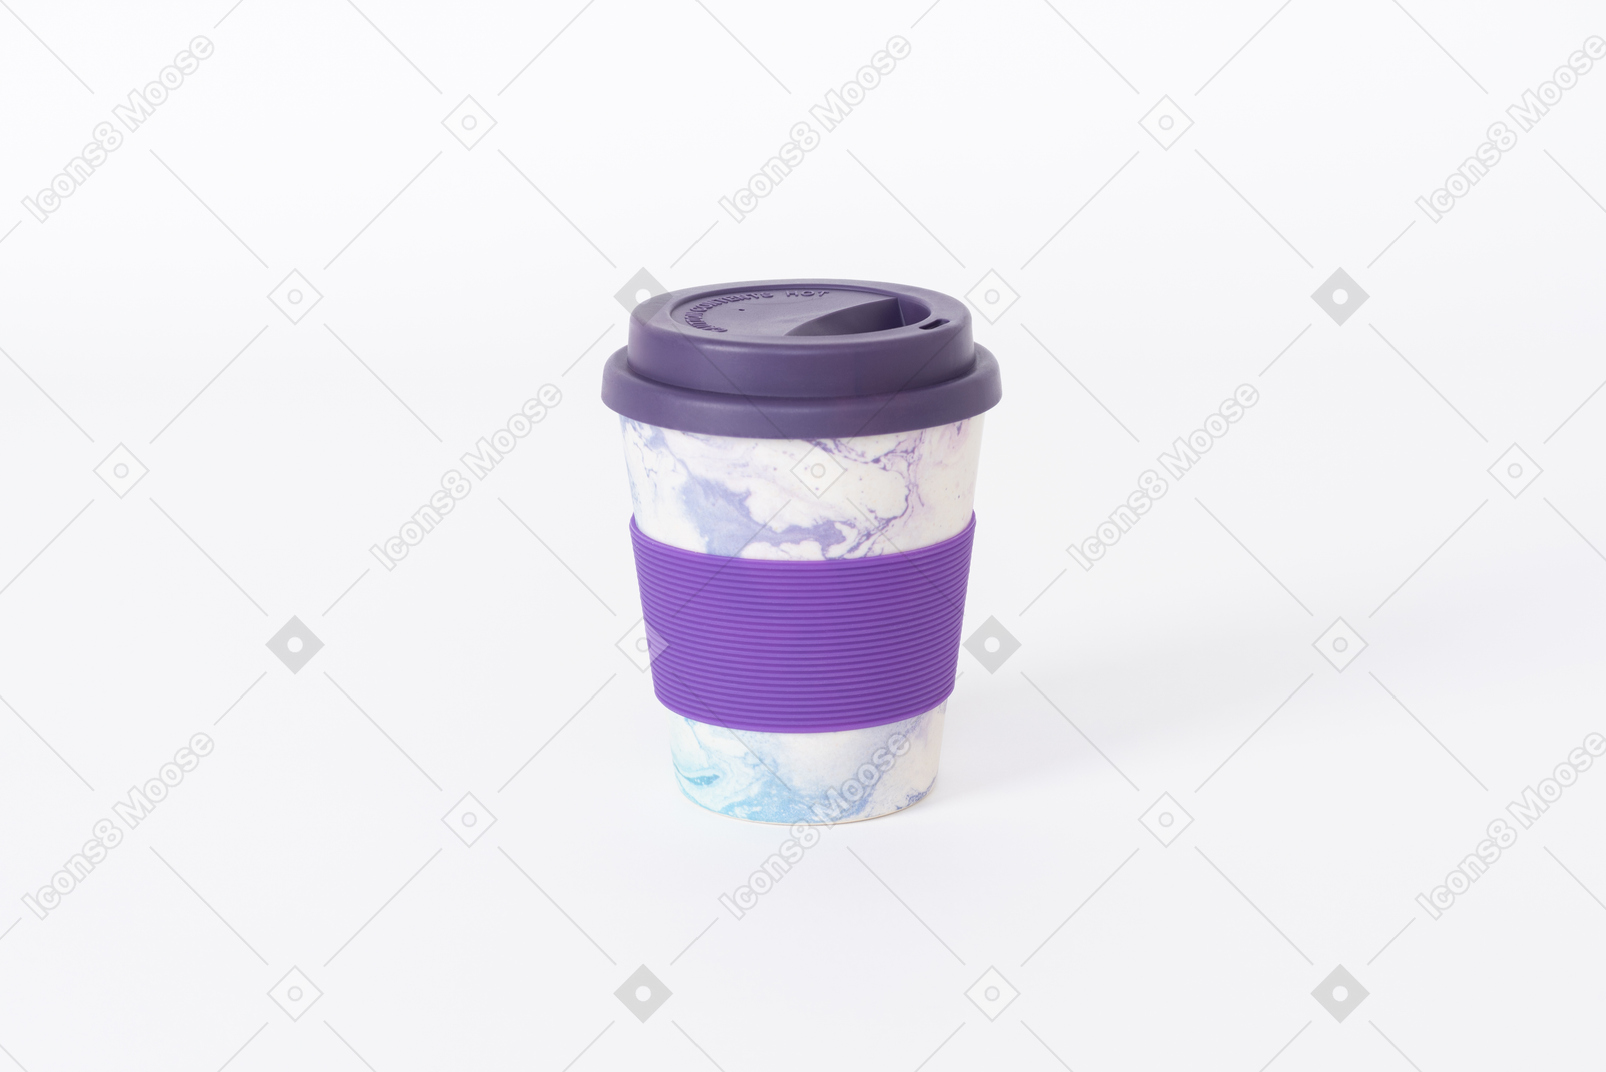 재사용 가능한 컵에 커피 가져 오기